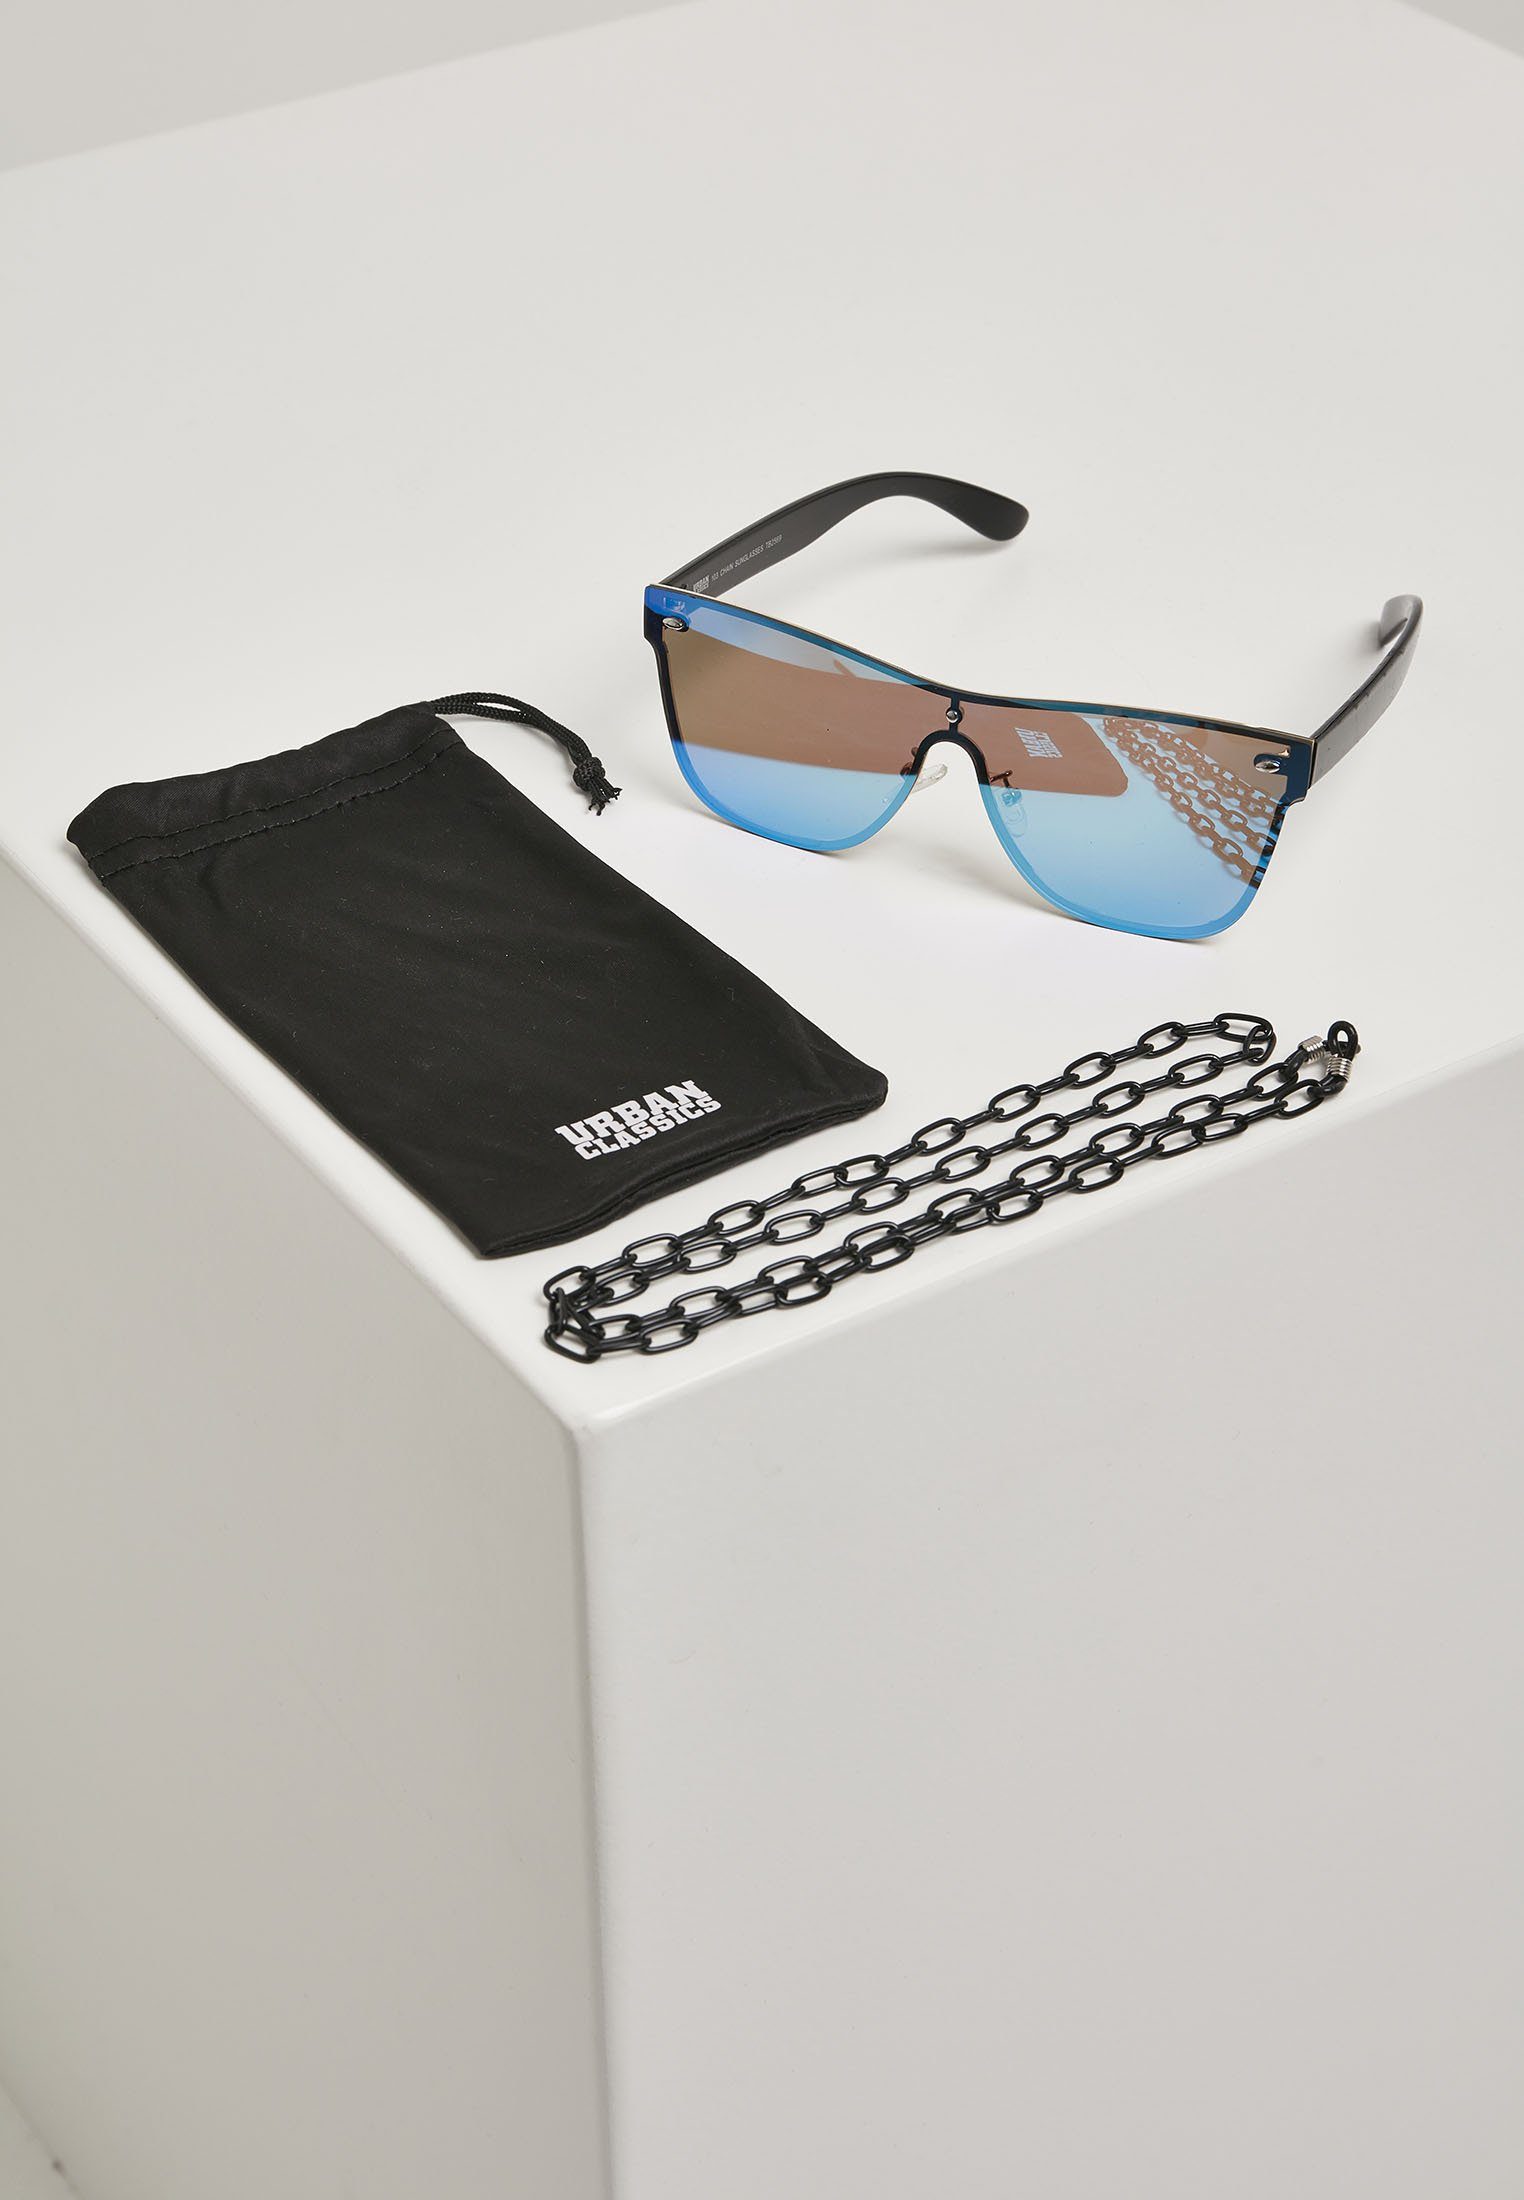 URBAN CLASSICS Sonnenbrille Unisex 103 Chain Sunglasses blk/blue | Sonnenbrillen